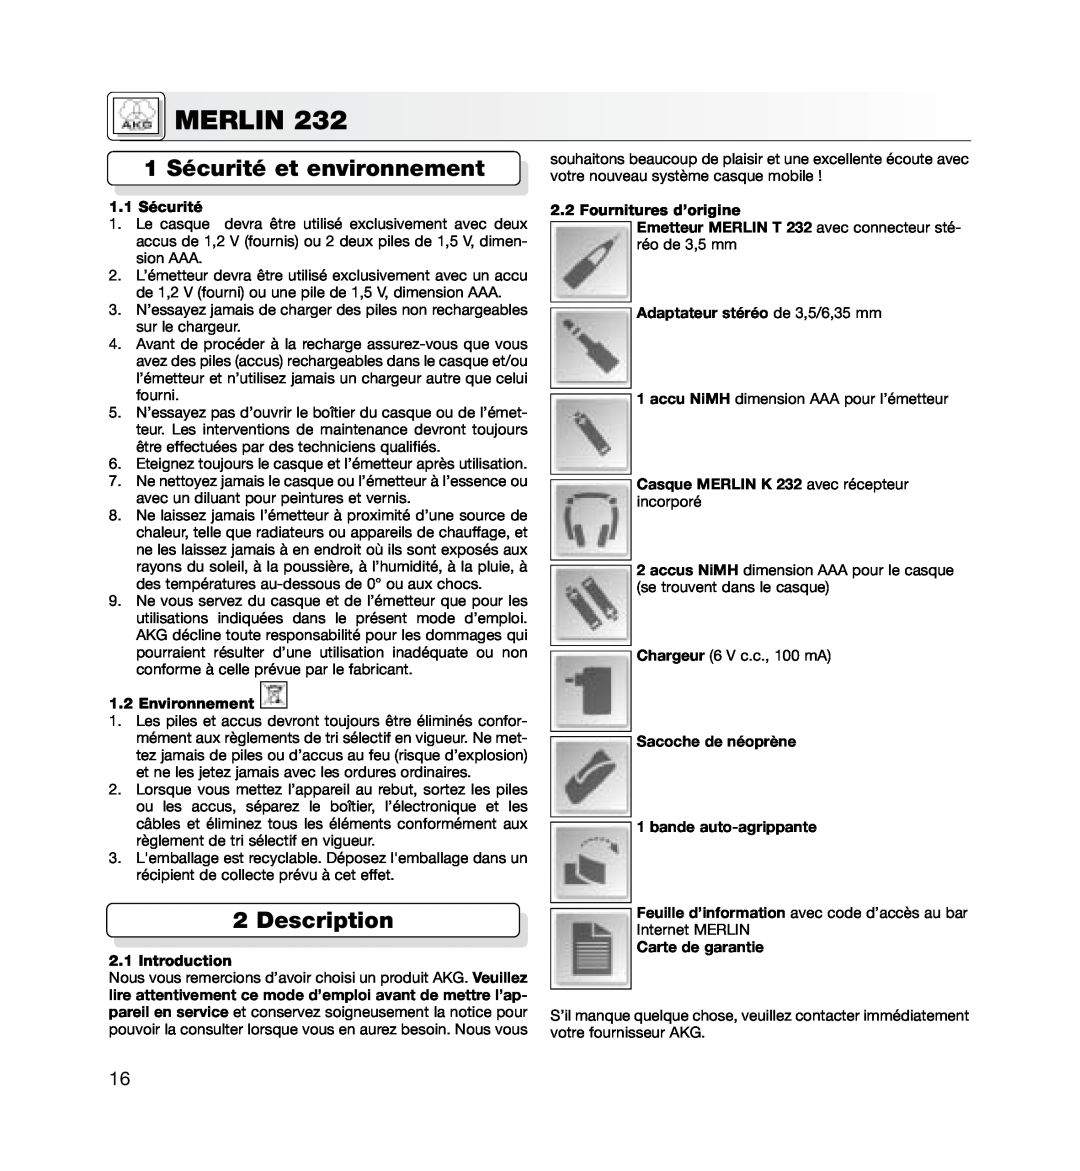 AKG Acoustics MERLIN 232 manual 1 Sécurité et environnement, 1.1 Sécurité, Environnement, Fournitures d’origine, Merlin 